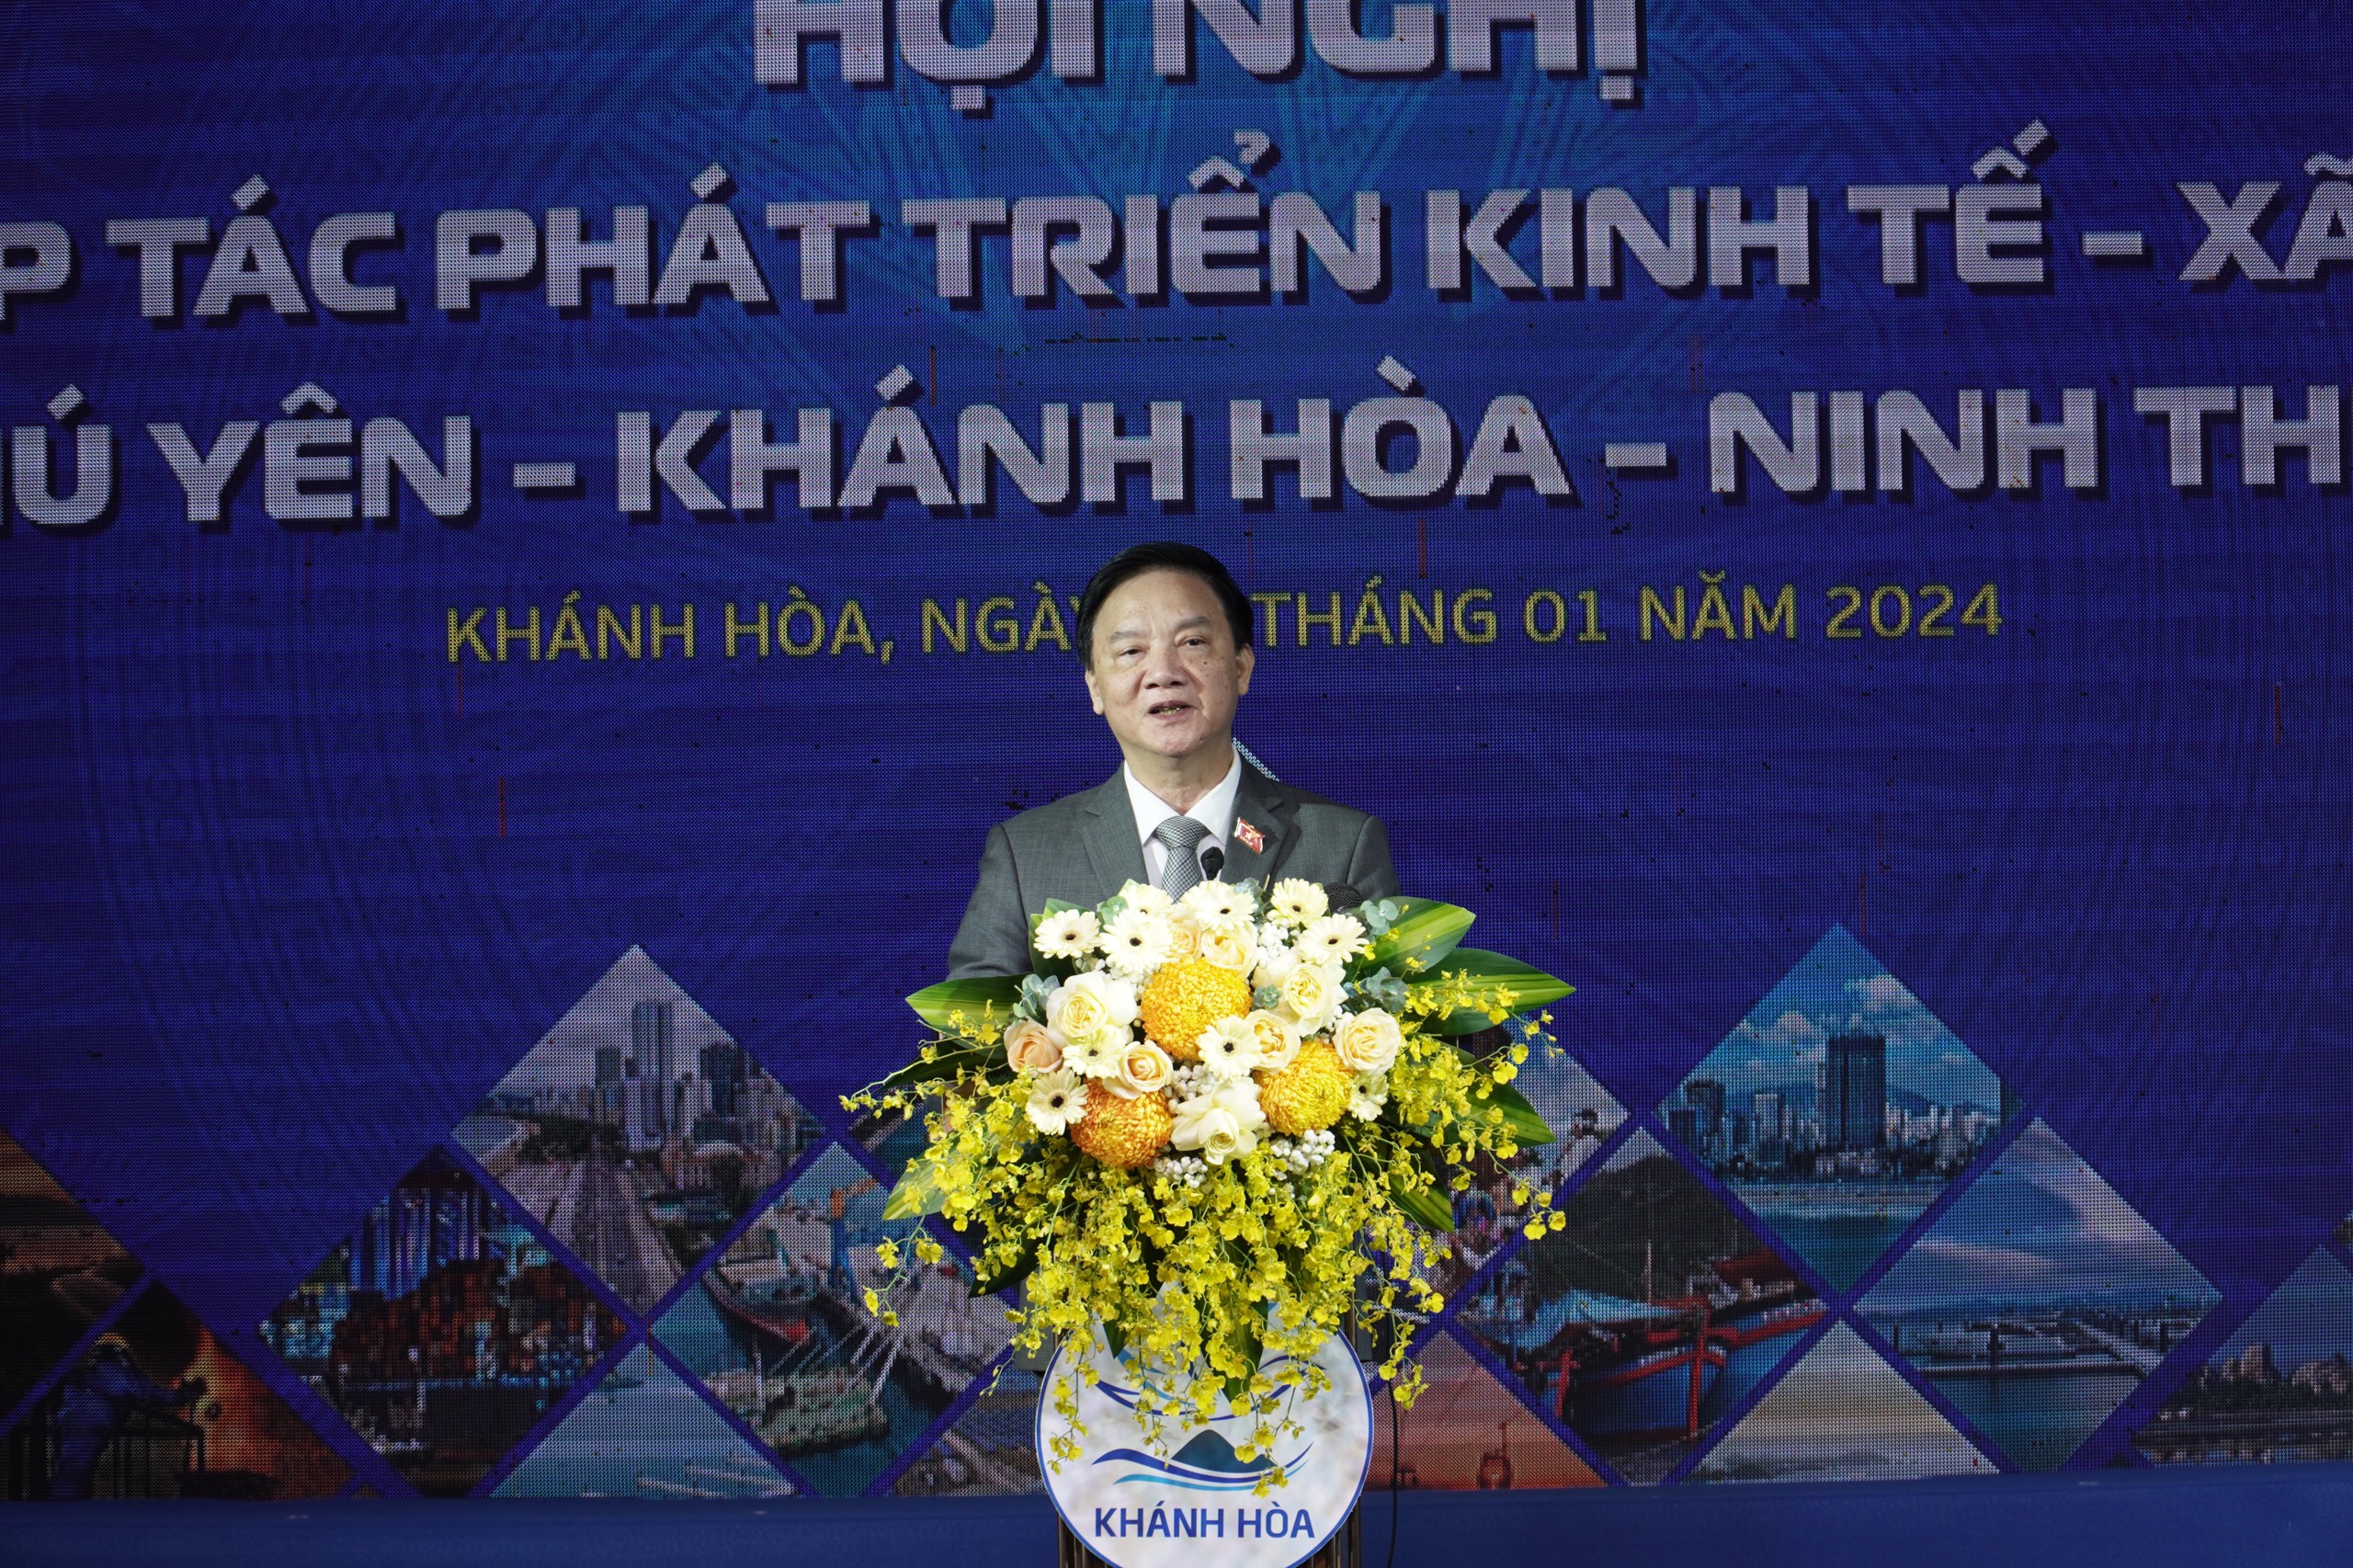 Phát huy thế mạnh cửa ngõ biển, thúc đẩy kinh tế Phú Yên - Khánh Hoà - Ninh Thuận- Ảnh 1.